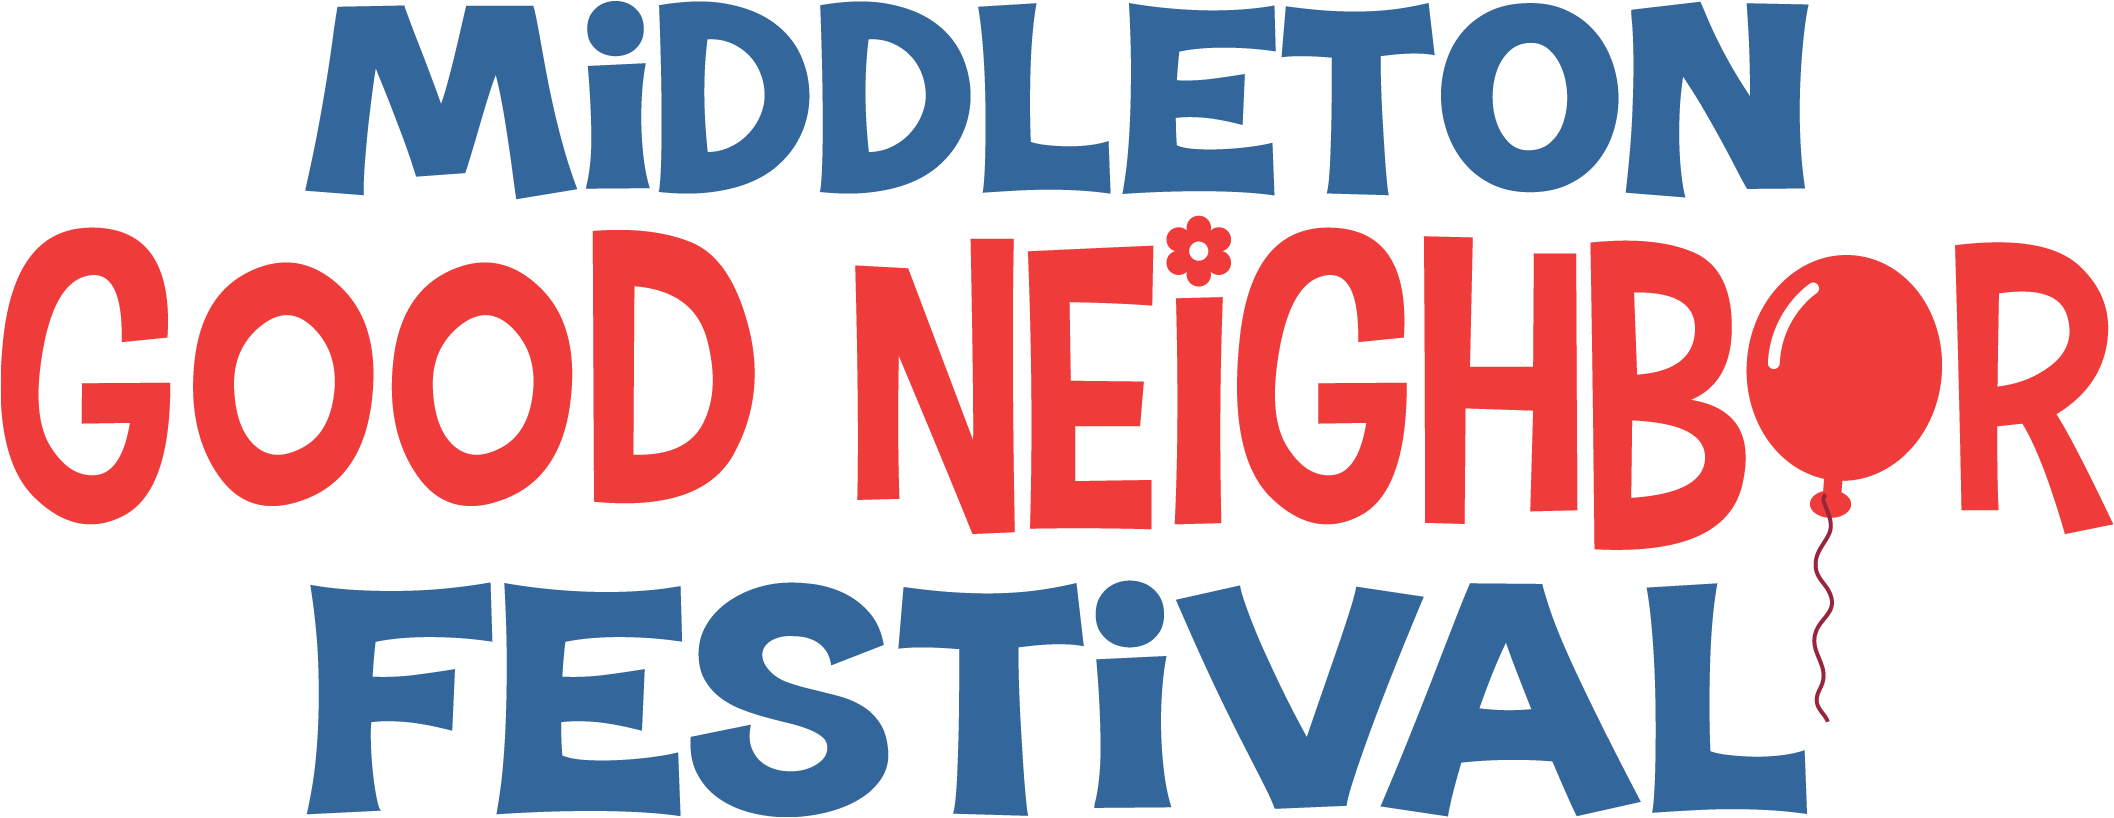 MIDDLETON GOOD NEIGHBOR FESTIVAL - Middleton Good Neighbor Festival